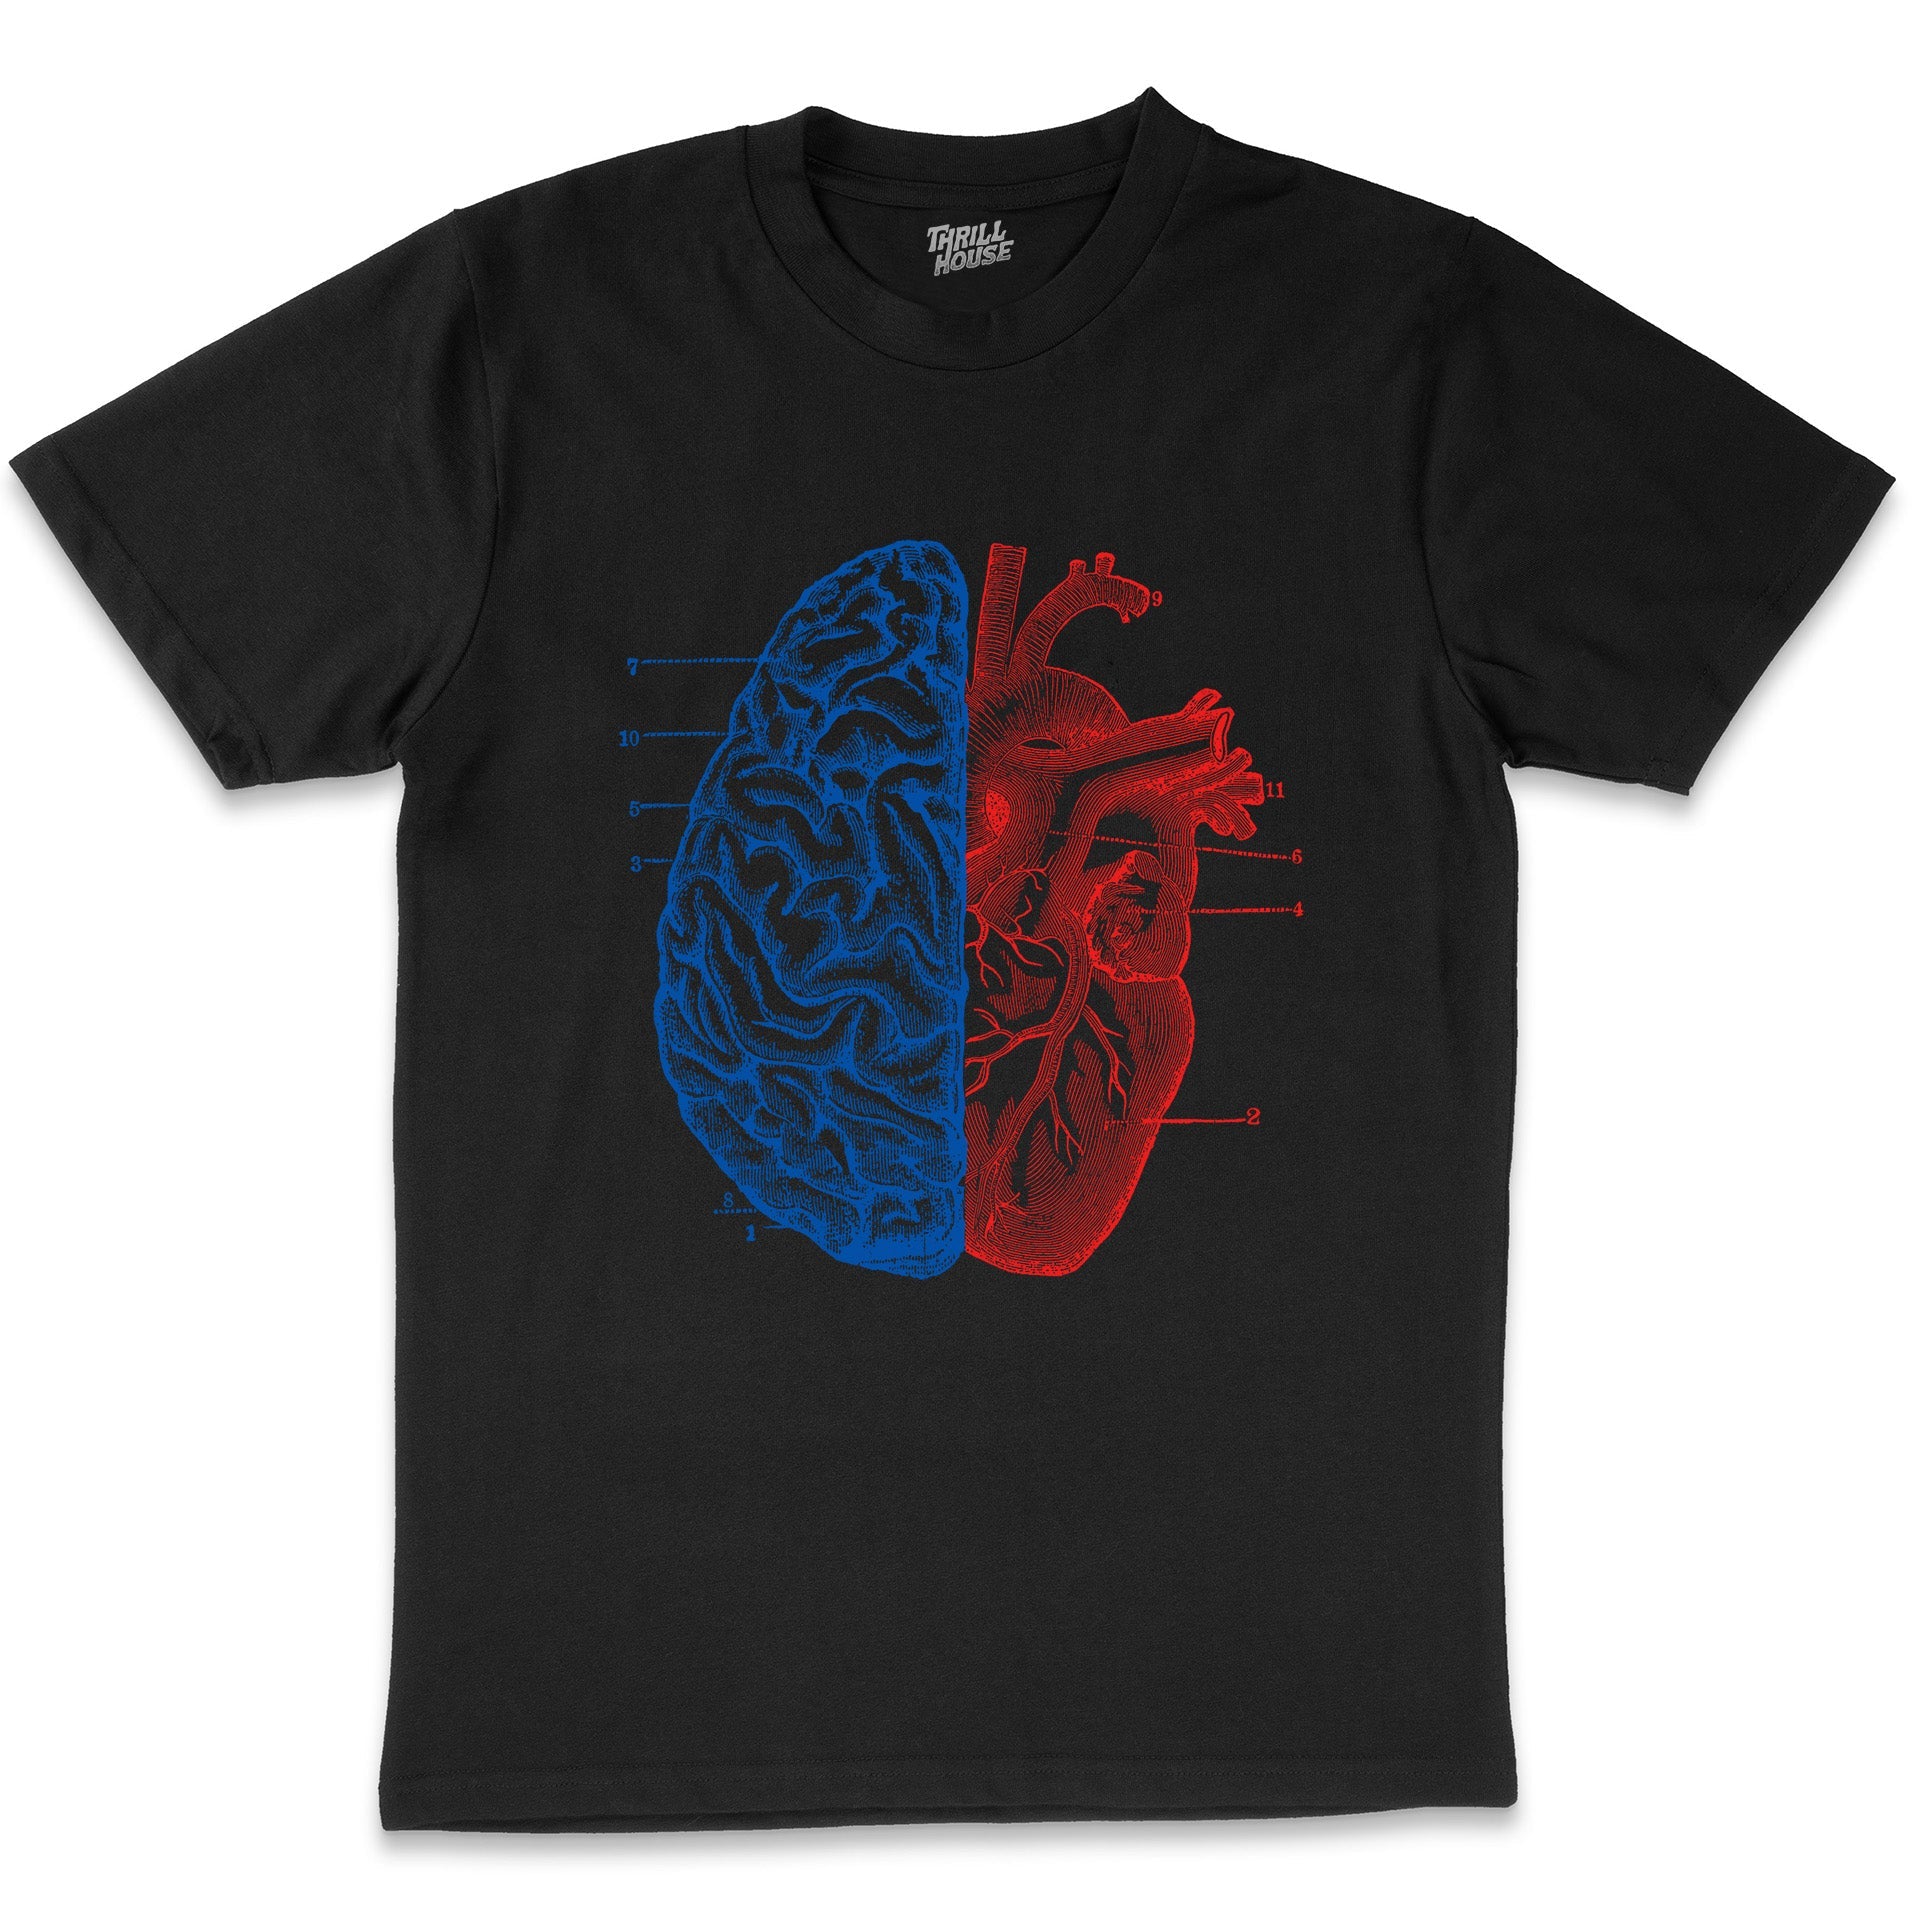 Heart and Brain Smart Love Artistic Cool Design Geek Nerd Cotton T-Shirt